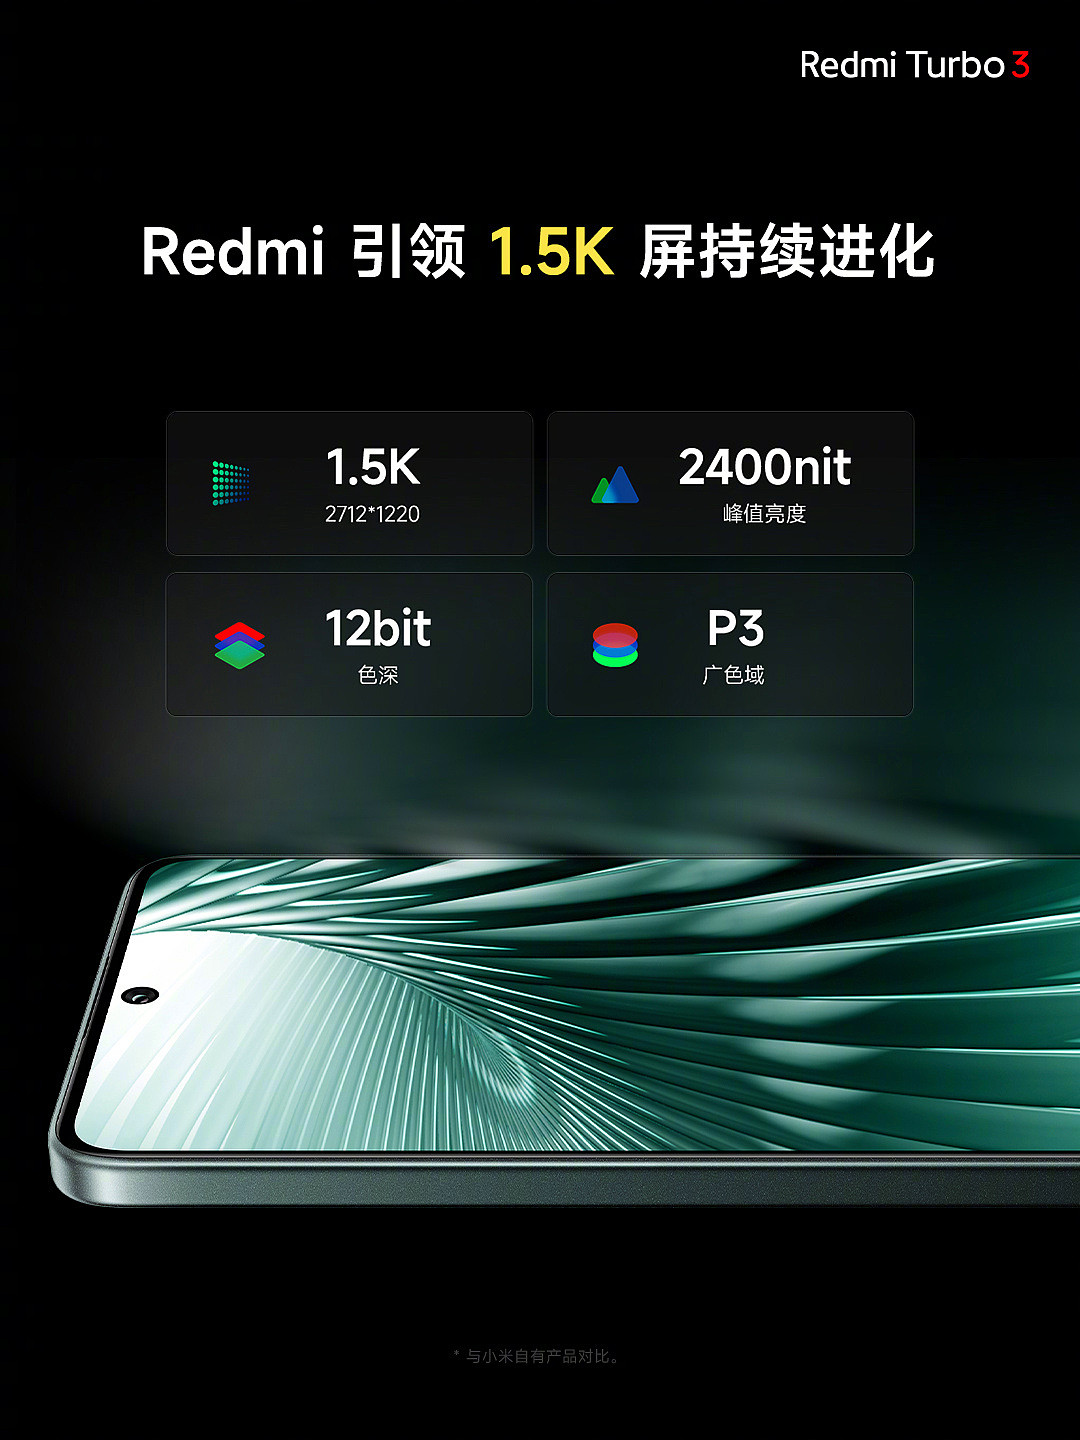 开售一个多月立减 300 元：小米 Redmi Turbo 3 手机 1669 元起免息新低 - 2